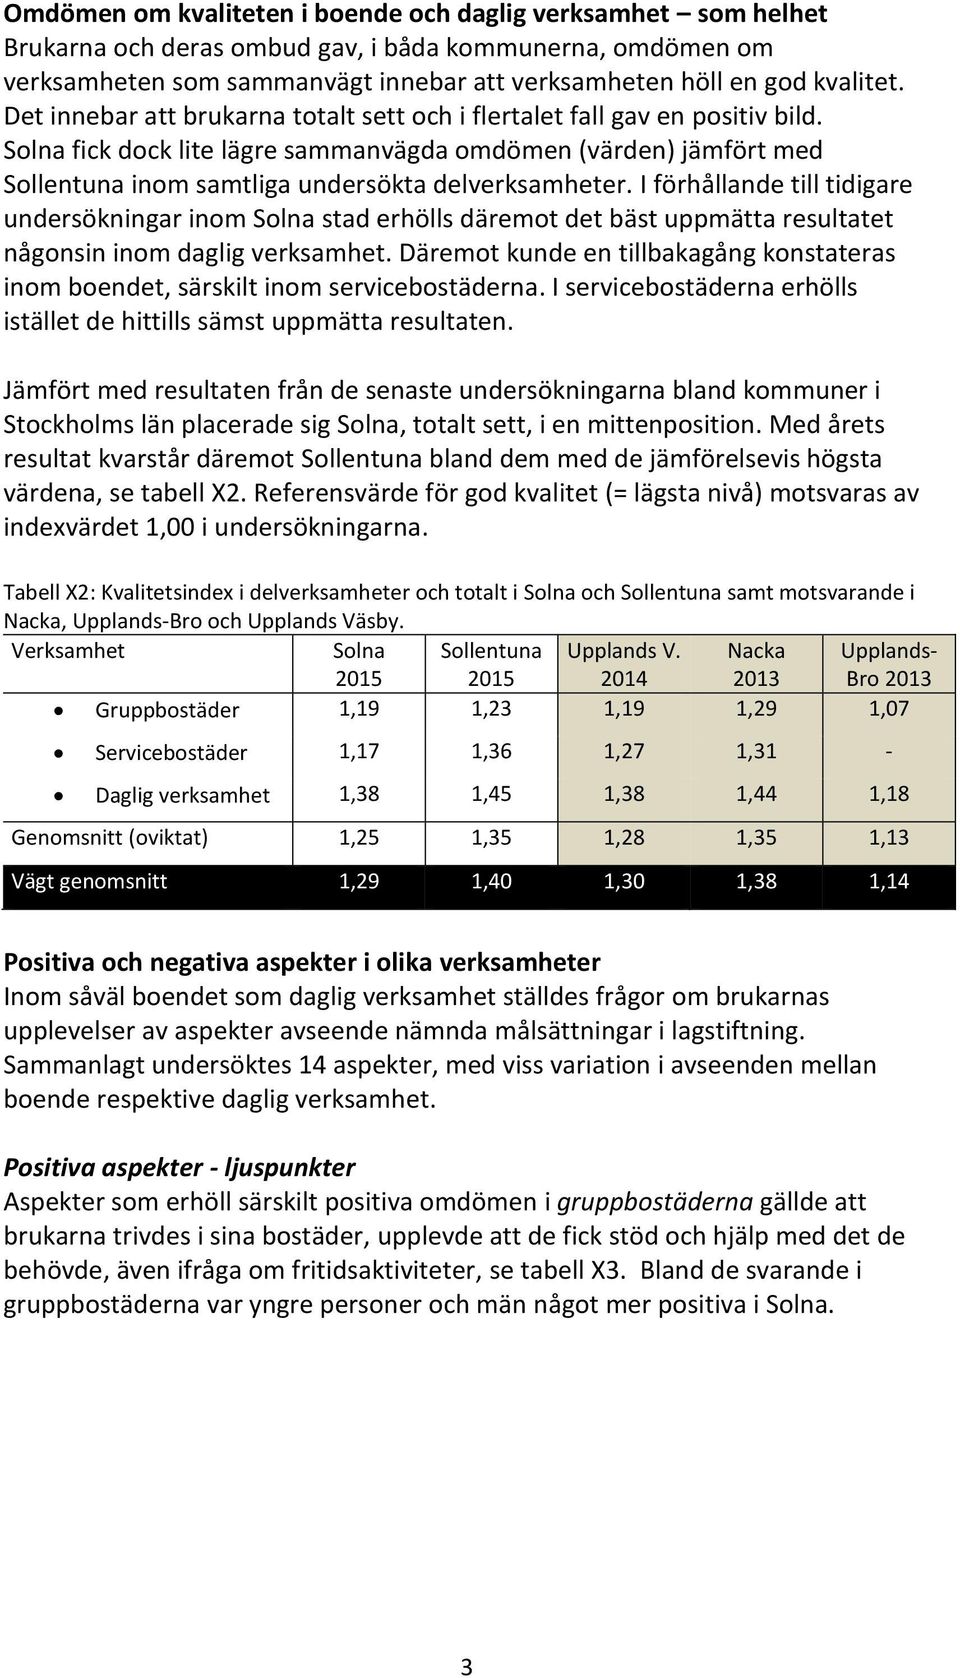 I förhållande till tidigare undersökningar inom Solna stad erhölls däremot det bäst uppmätta resultatet någonsin inom daglig verksamhet.